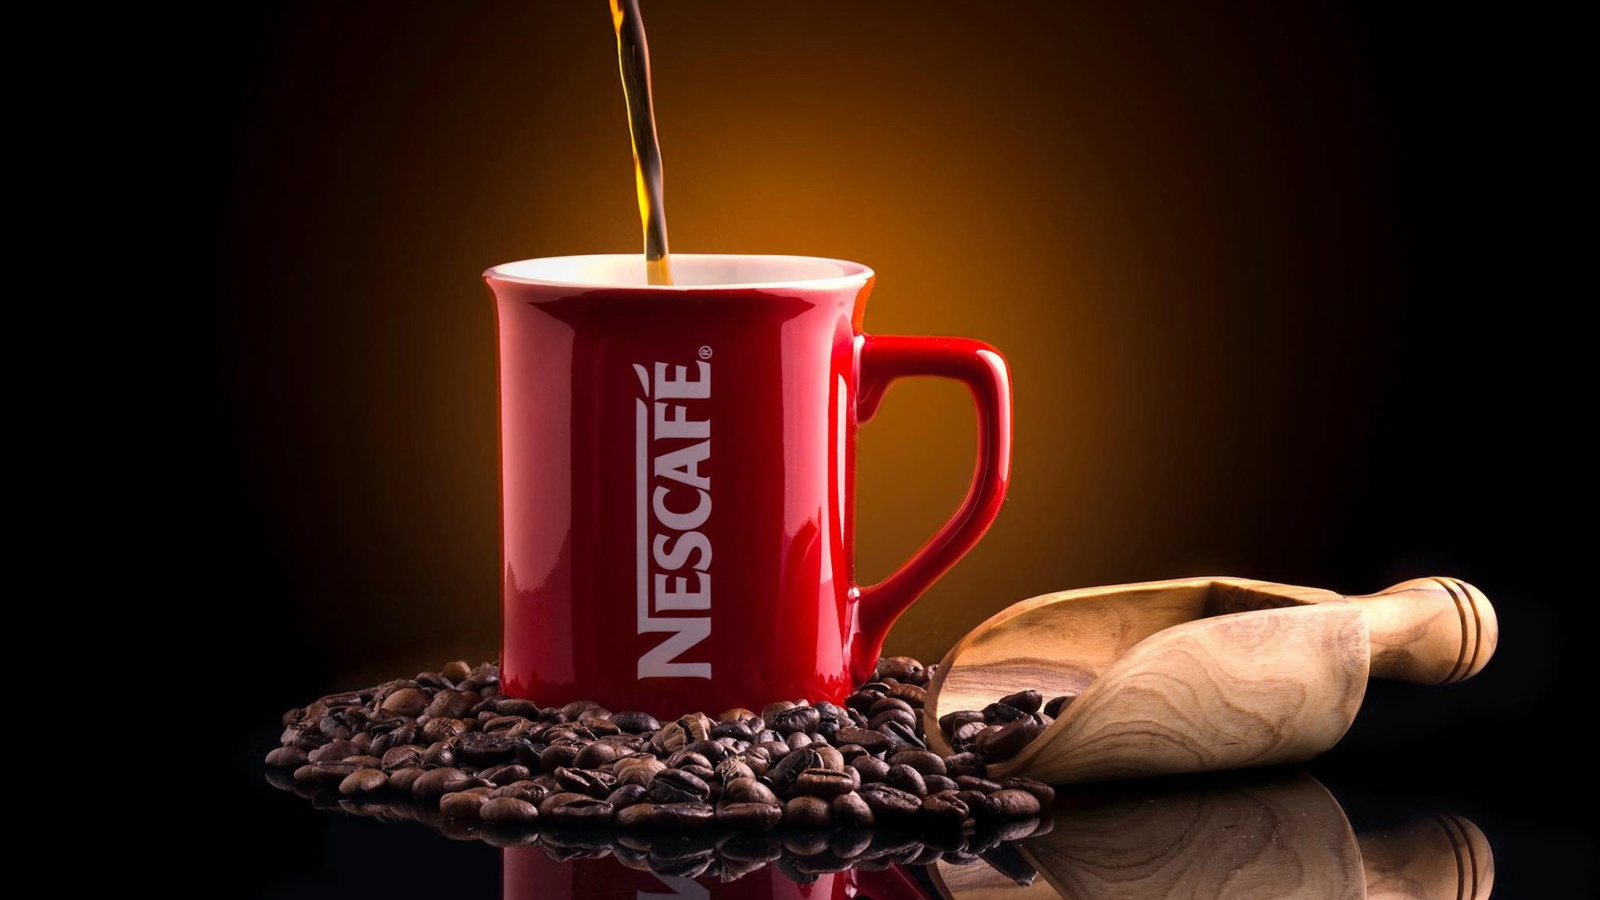 Nescafe Coffee wallpaper 1600x900